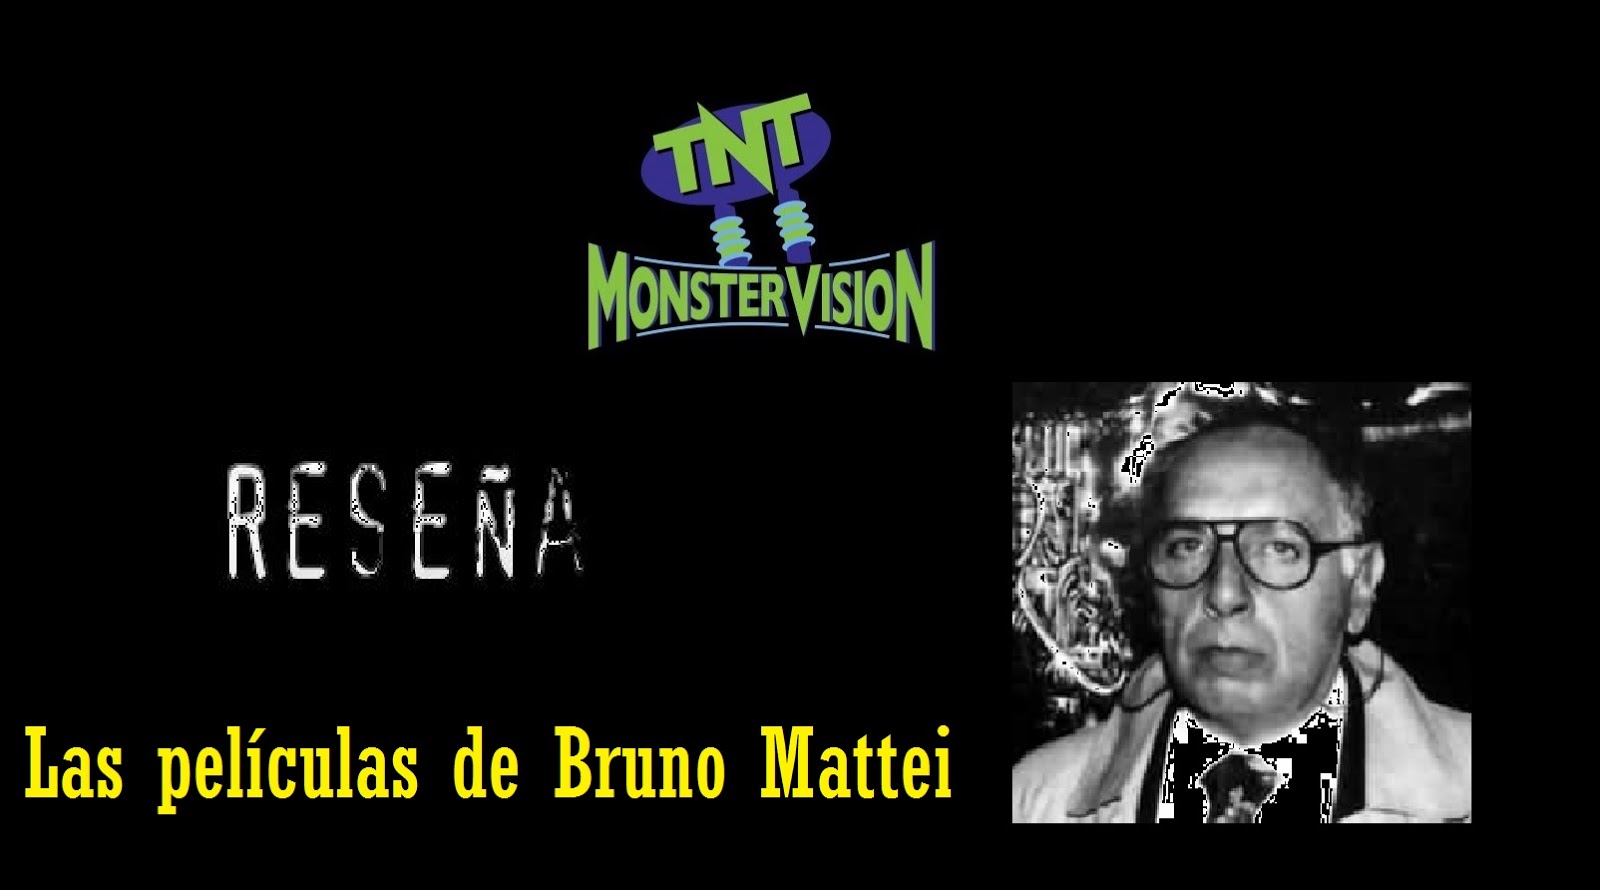 Las películas de Bruno Mattei